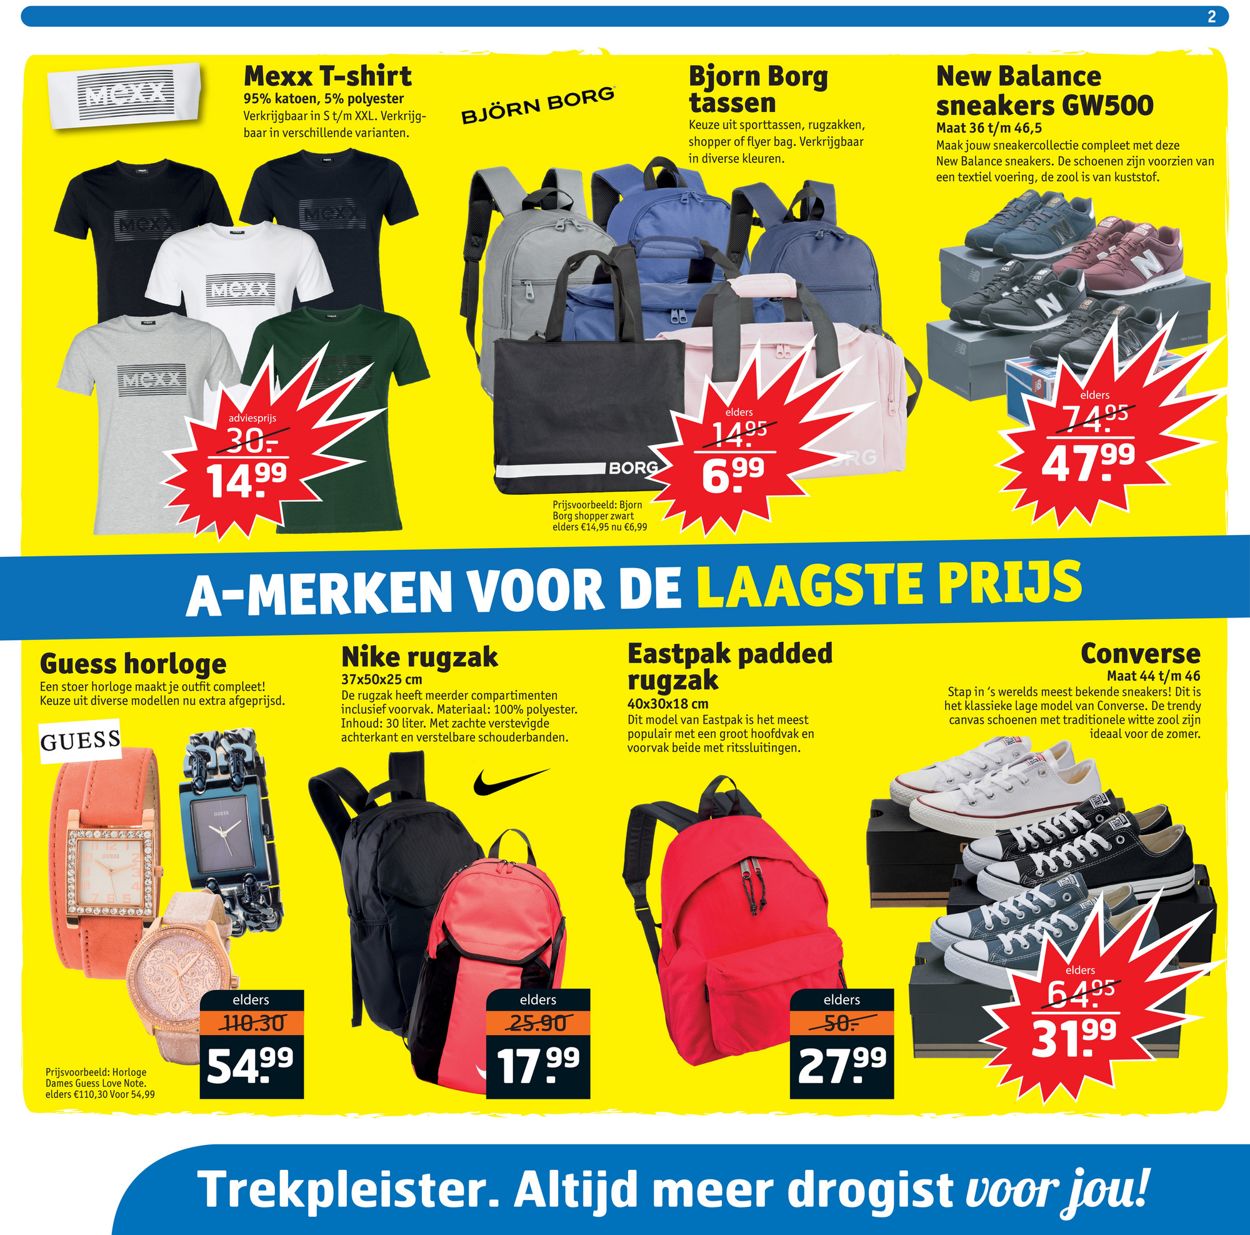 zitten Goedaardig jogger Trekpleister Actuele folder 09.07 - 14.07.2019 [2] - wekelijkse-folders.nl